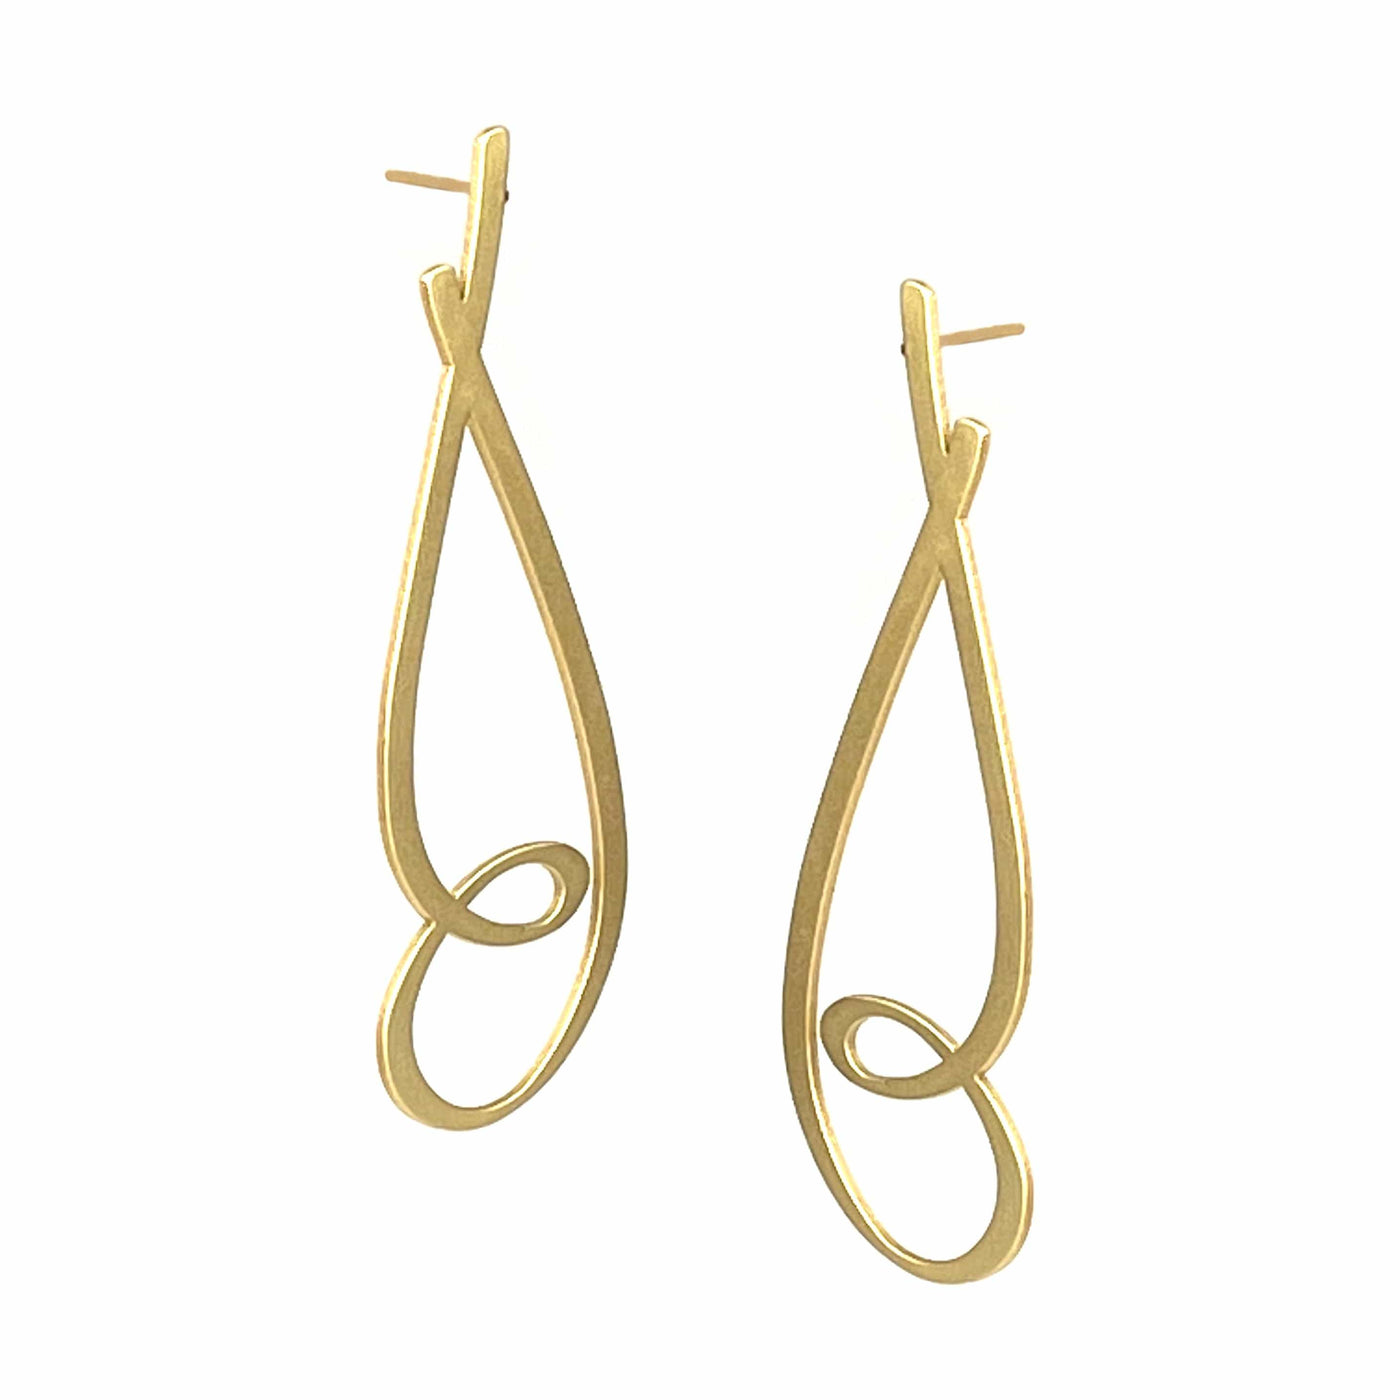 Crimp Stud Earrings - 22ct Matt Gold Plate - inSync design